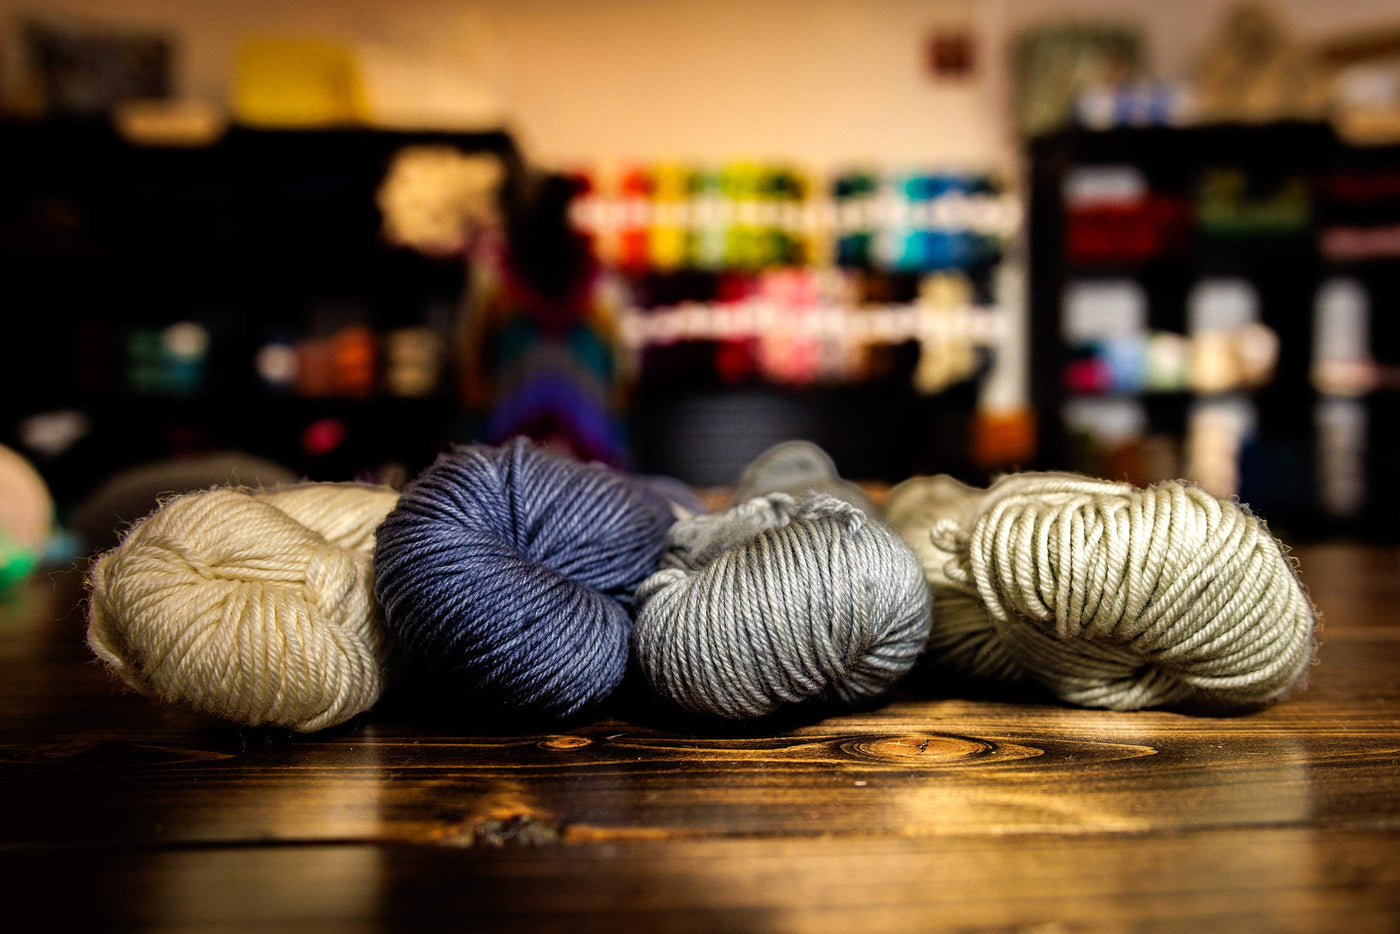 Skein Yarn Shop - Your Local Yarn Shop in RI